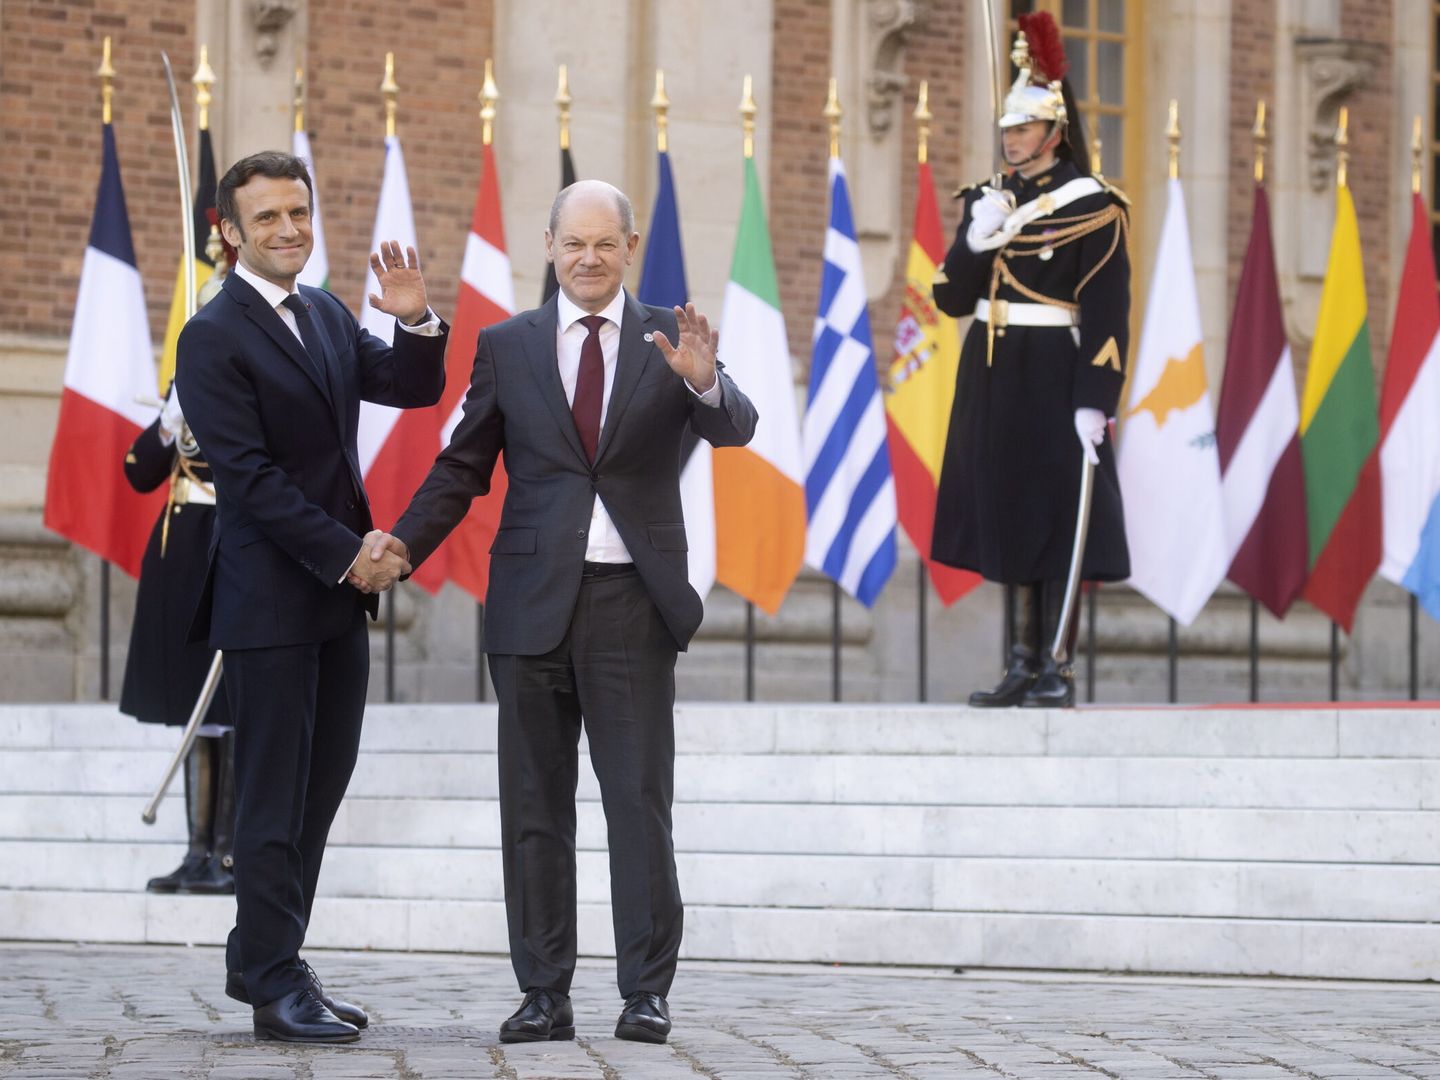 El presidente francés, Emmanuel Macron, junto a su homólogo alemán, Olaf Scholz, el pasado 10 de marzo en Paris, Francia. (EFE/ Ian Langsdon) 